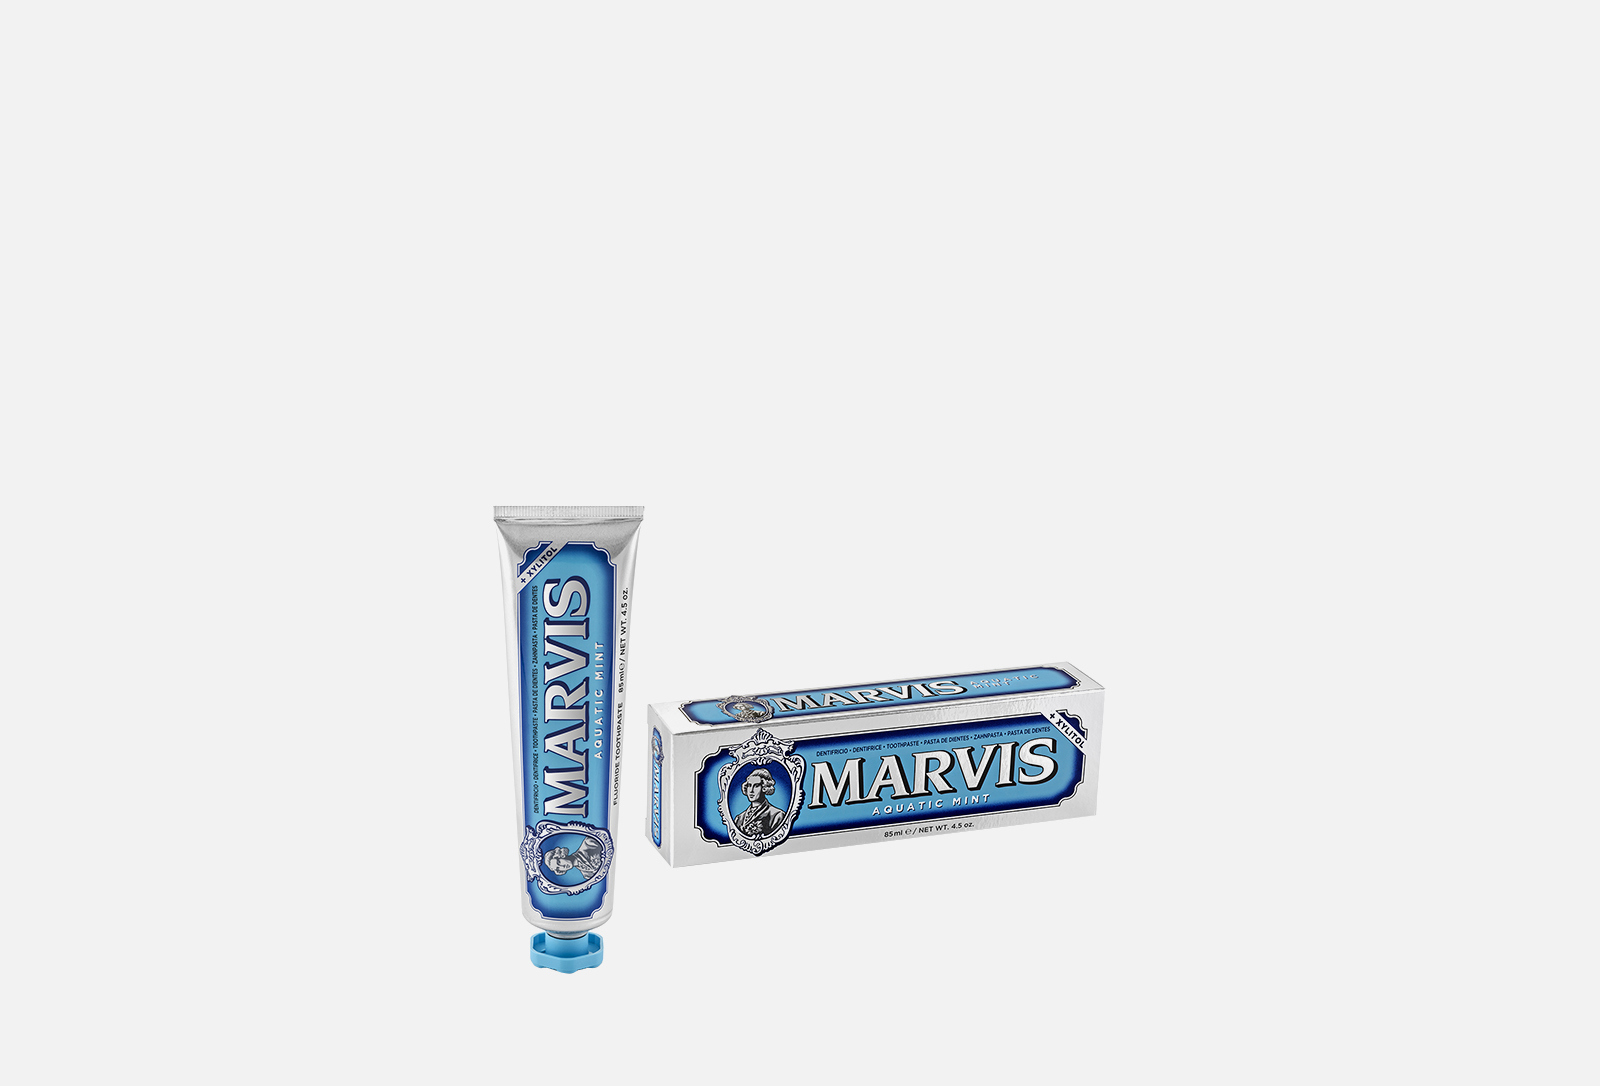 Marvis Зубная паста Aquatic Mint 85 мл — купить в Москве